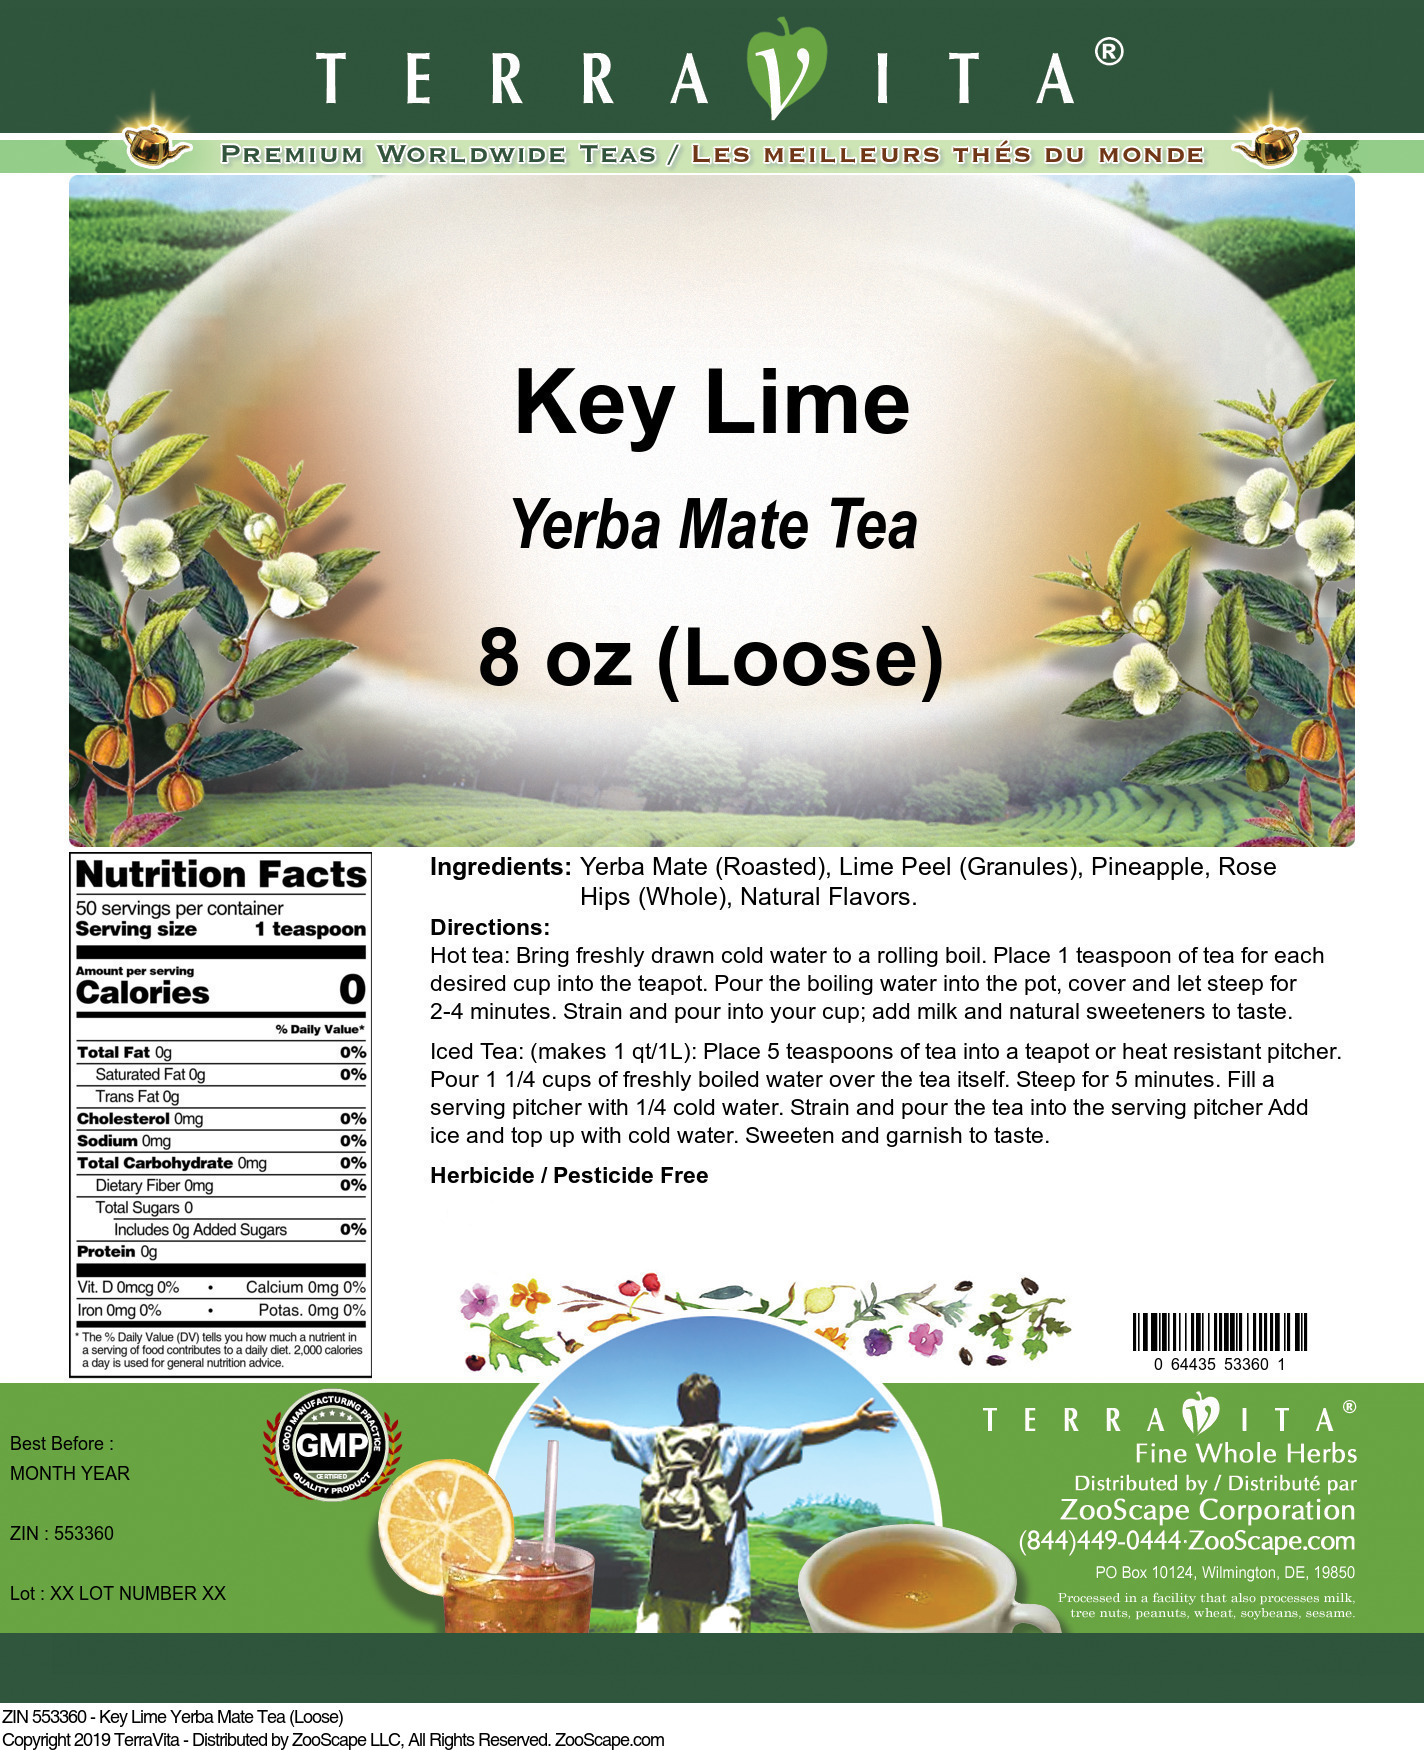 Key Lime Yerba Mate Tea (Loose) - Label